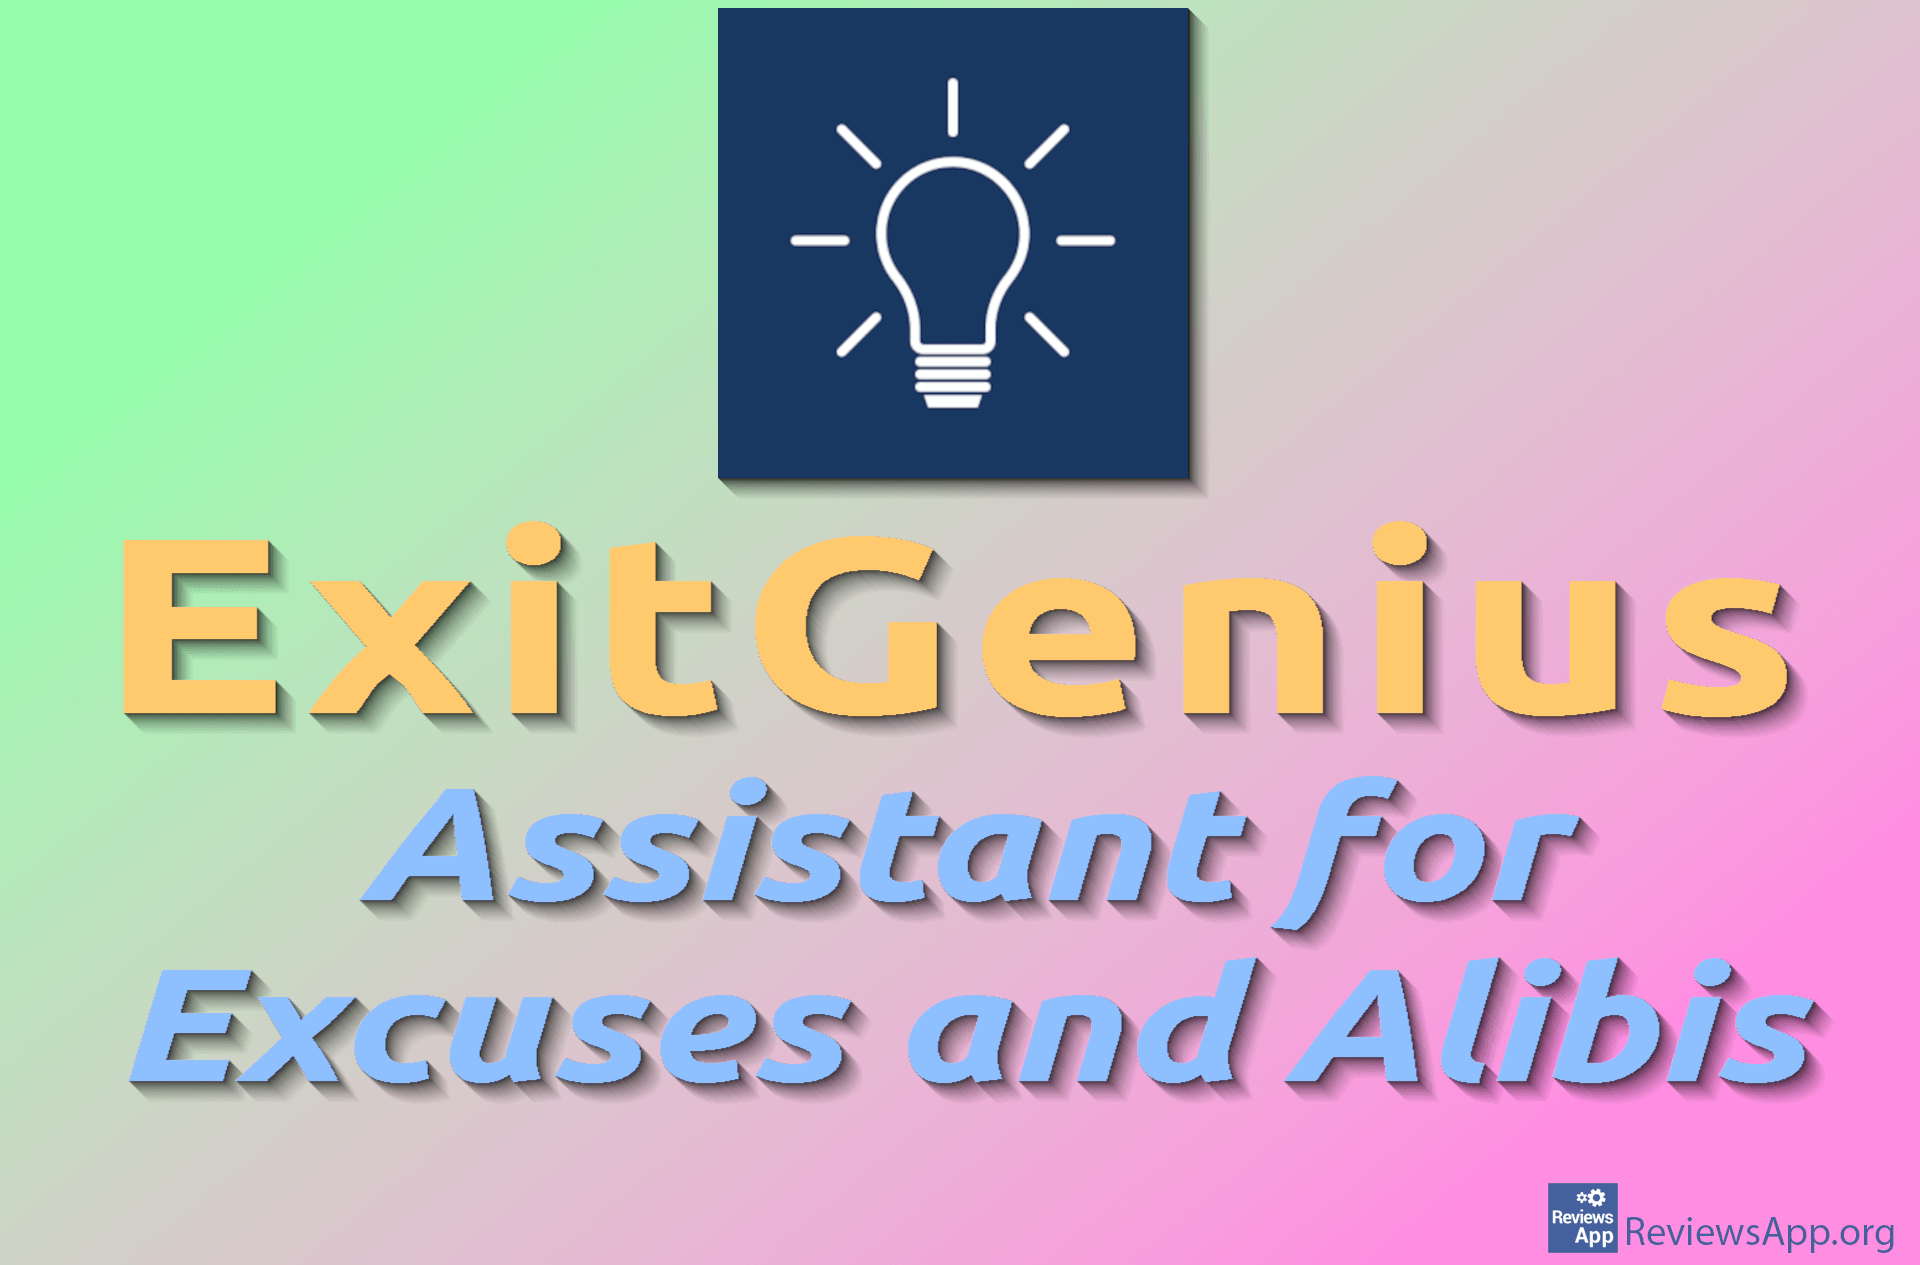 ExitGenius – Assistant for Excuses and Alibis